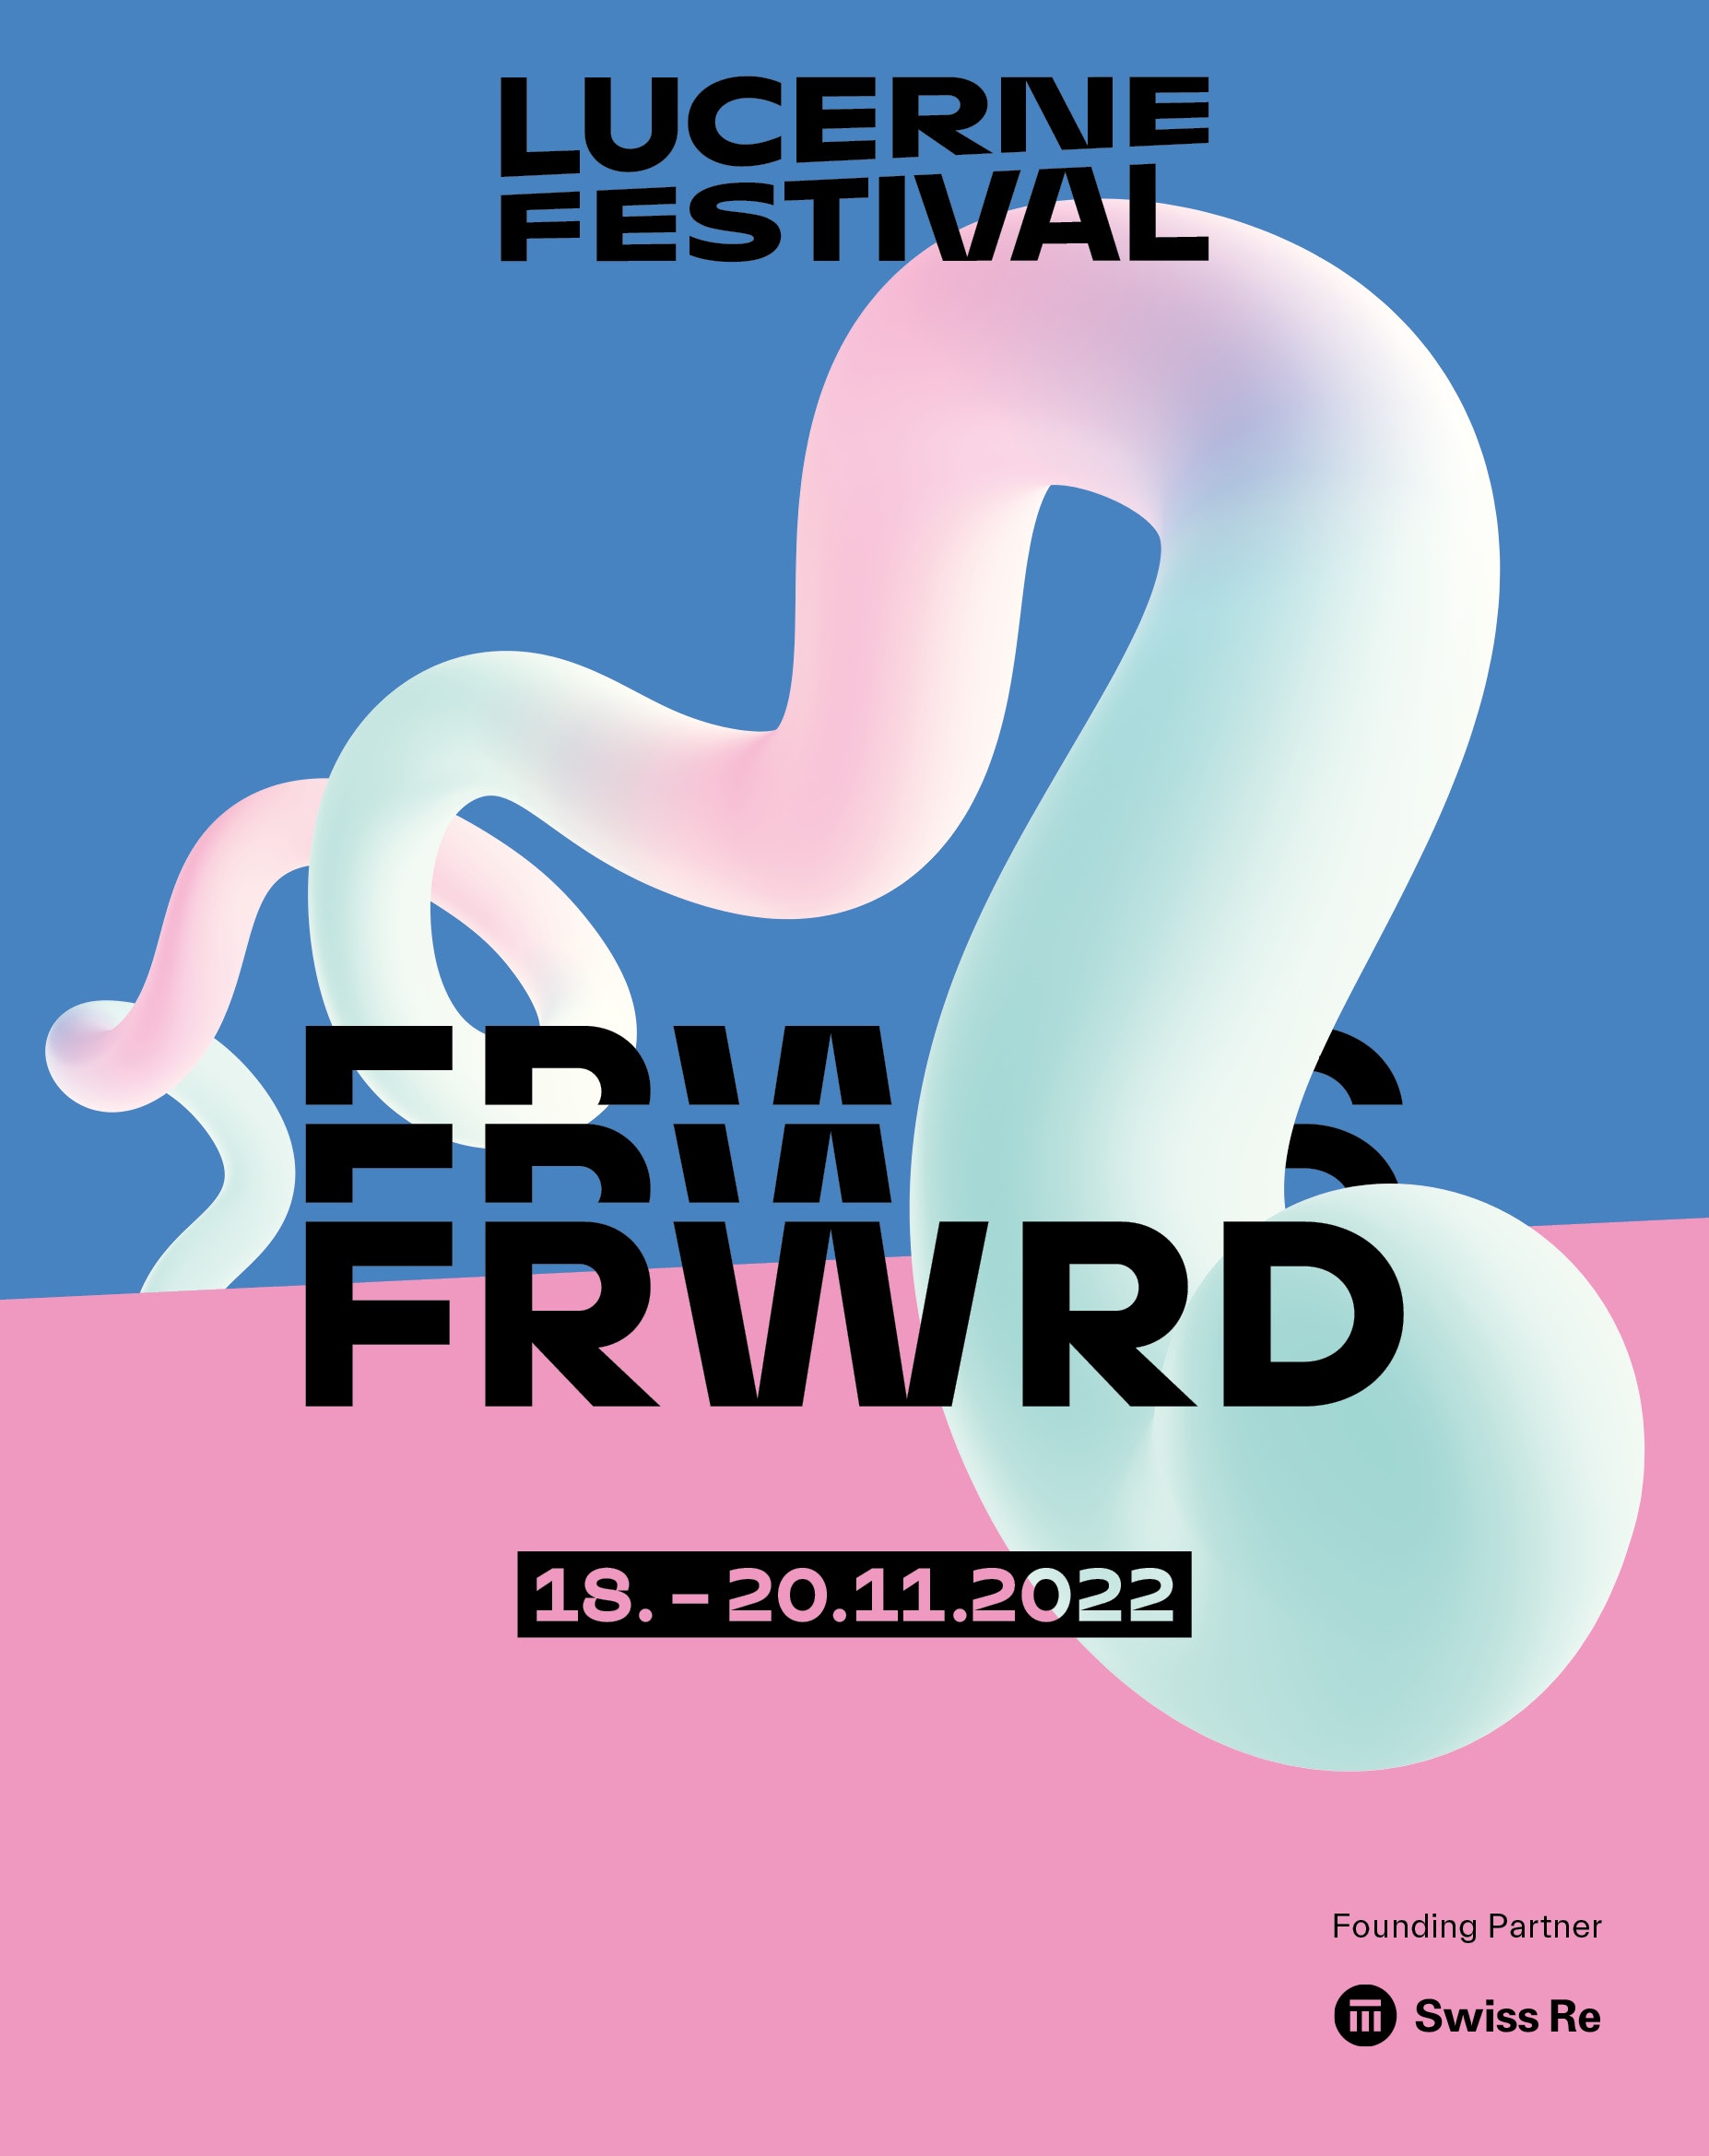 Ein Plakat, das farblich in zwei Hälften aufgeteilt ist (blau und pink). Darüber hat es die Schriftzüge Lucerne Festival und FRWRD.